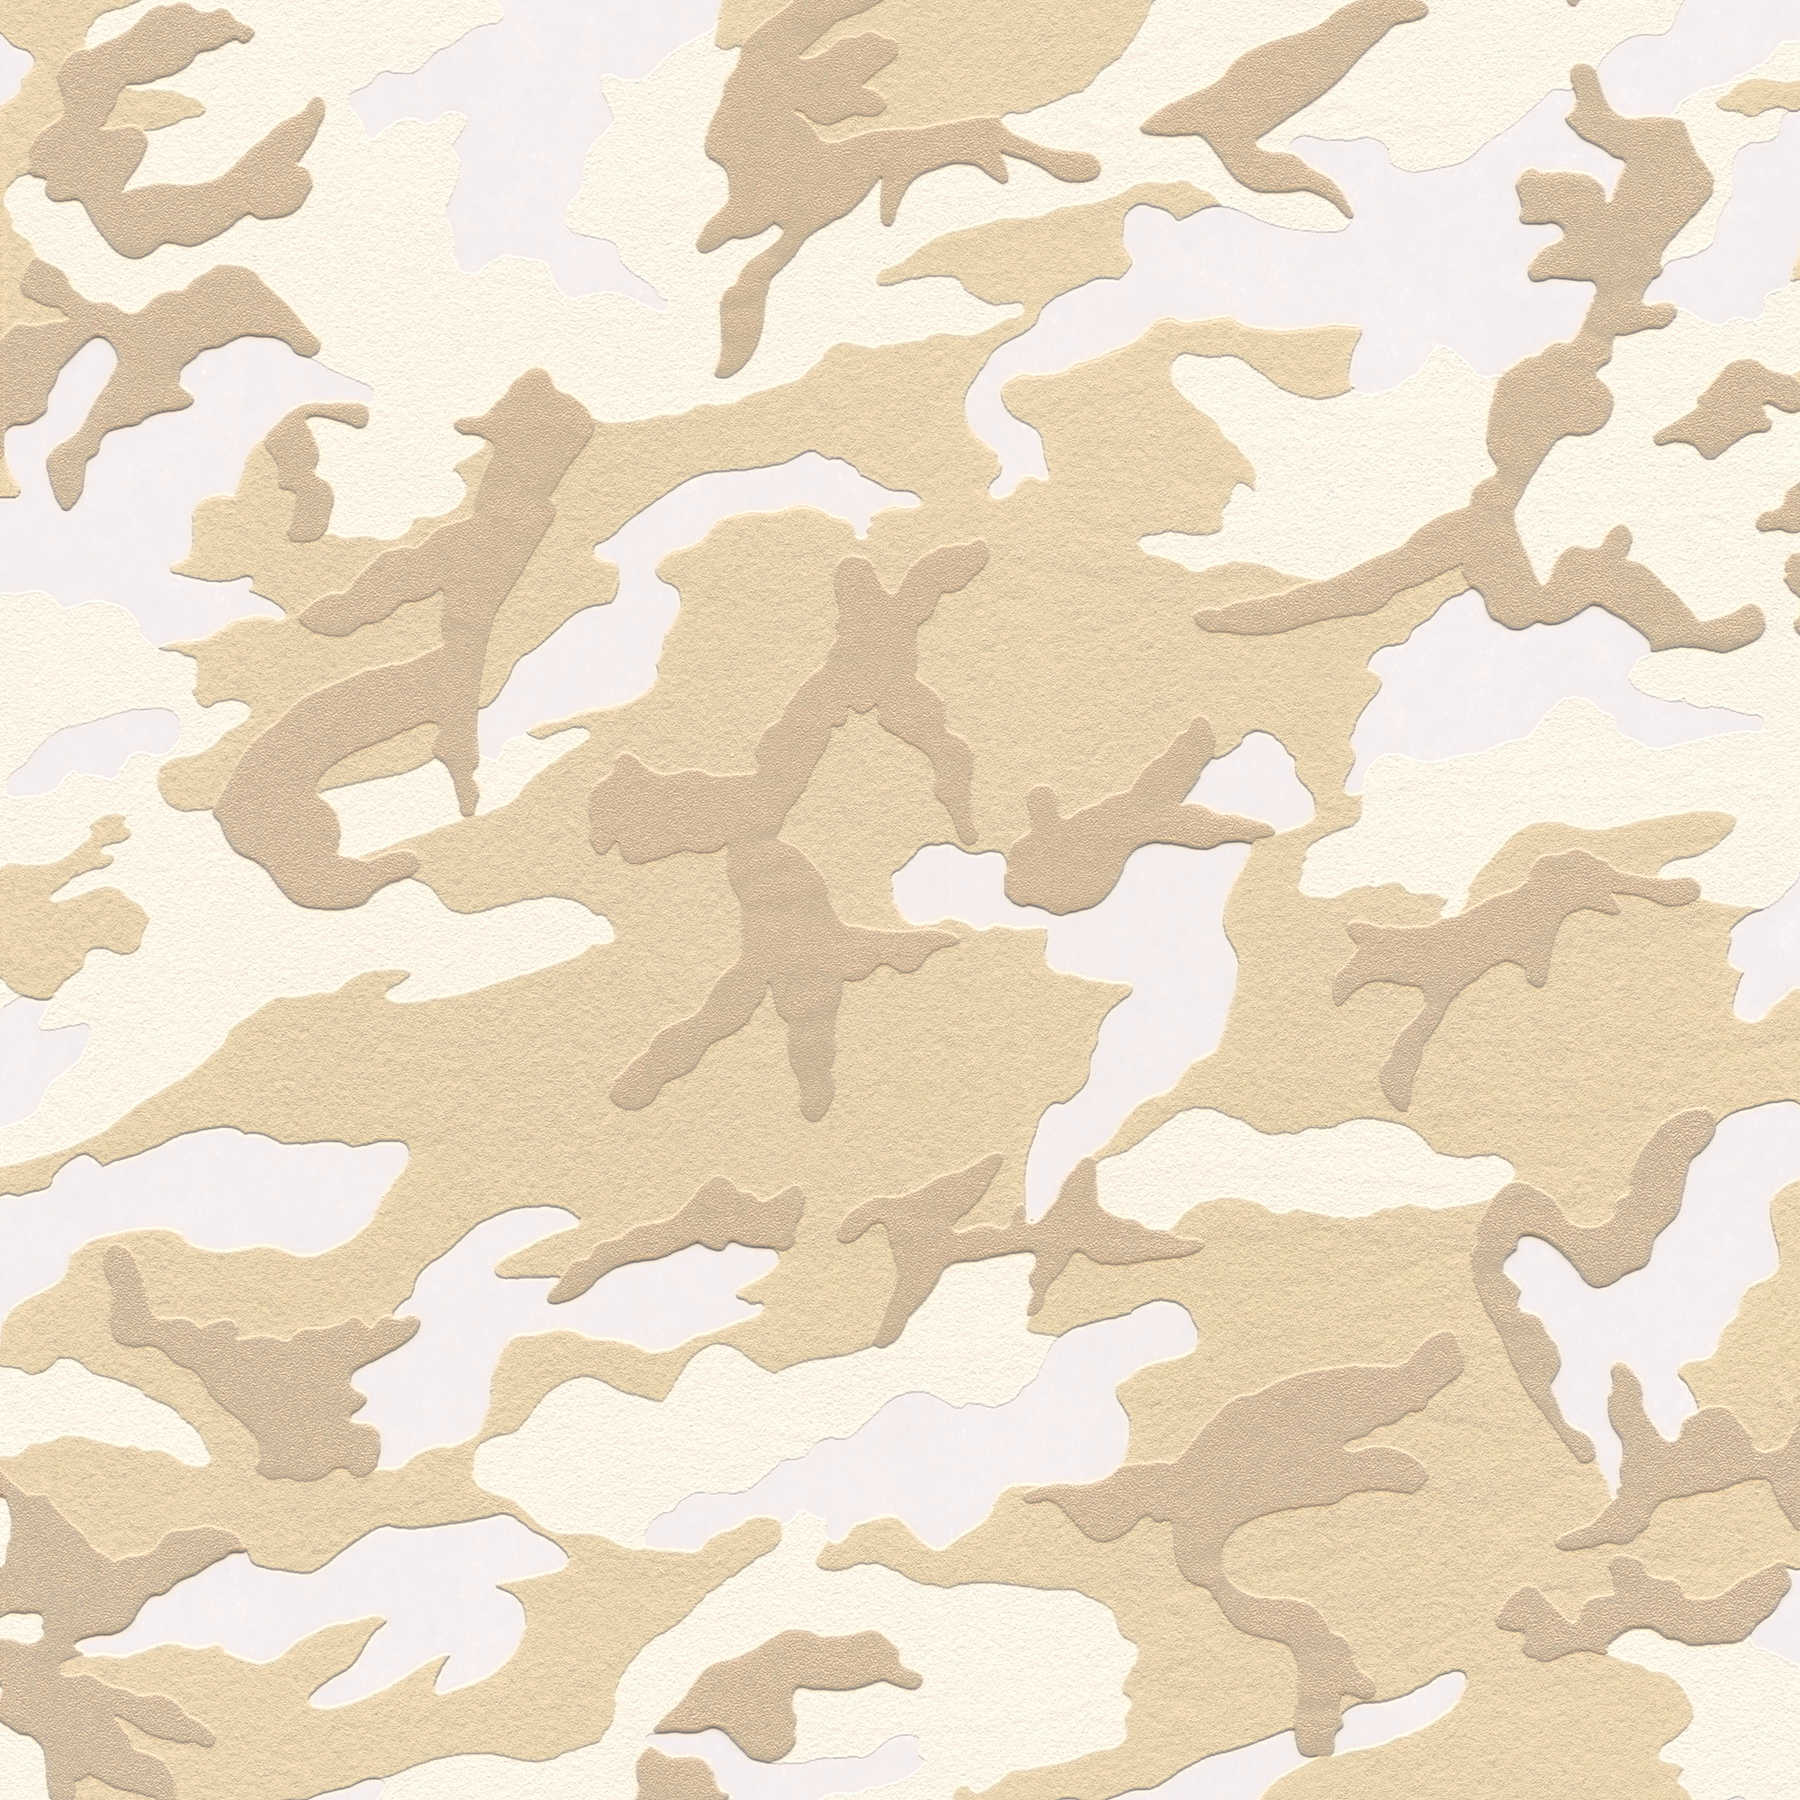 Tapete Tarnmuster Wüste, Camouflage-Tapete – Beige, Braun
